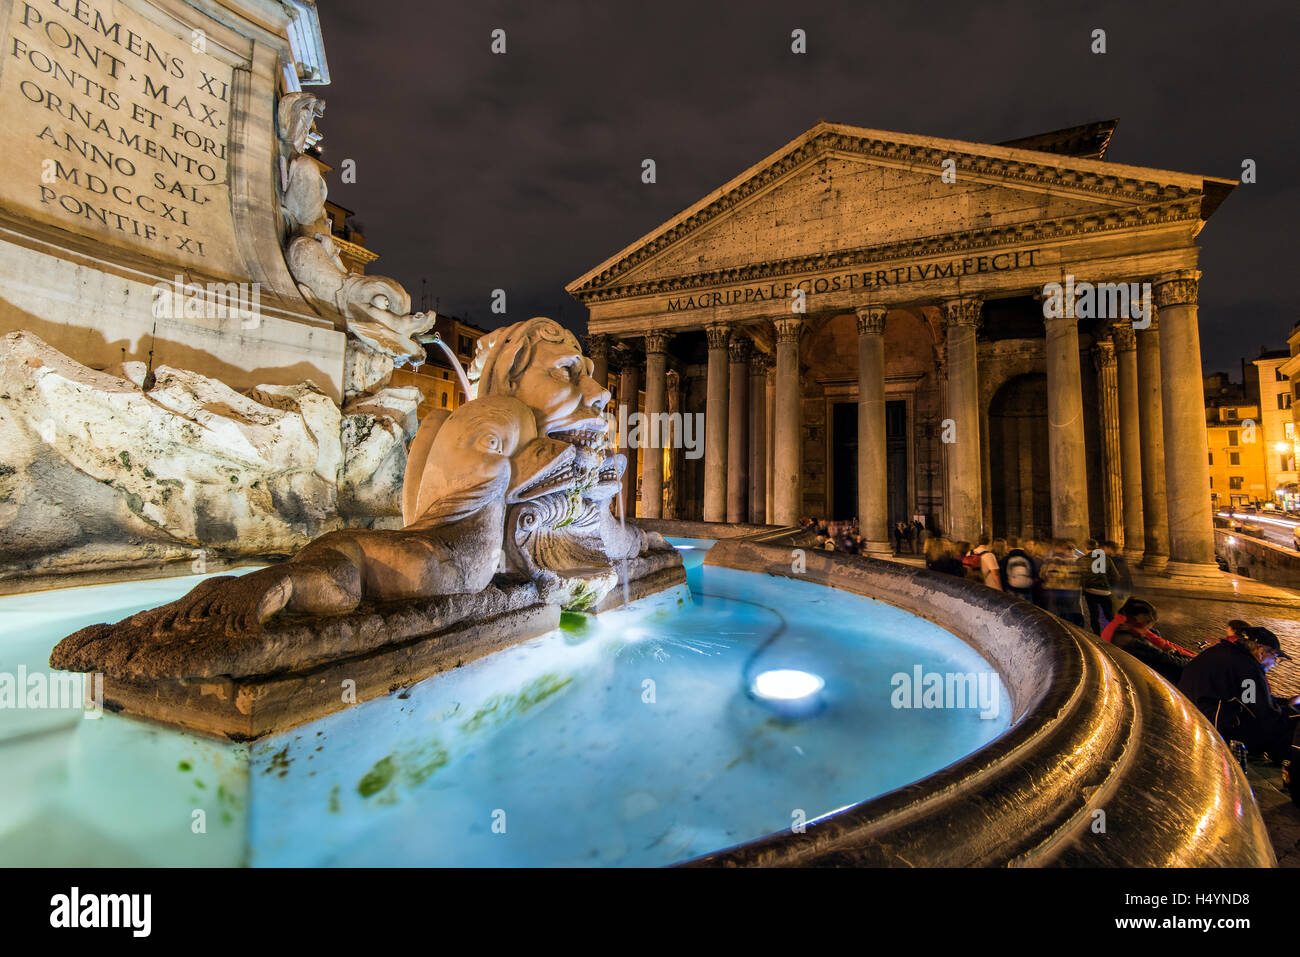 Night view of Pantheon and fountain at Piazza della Rotonda, Rome, Lazio, Italy Stock Photo